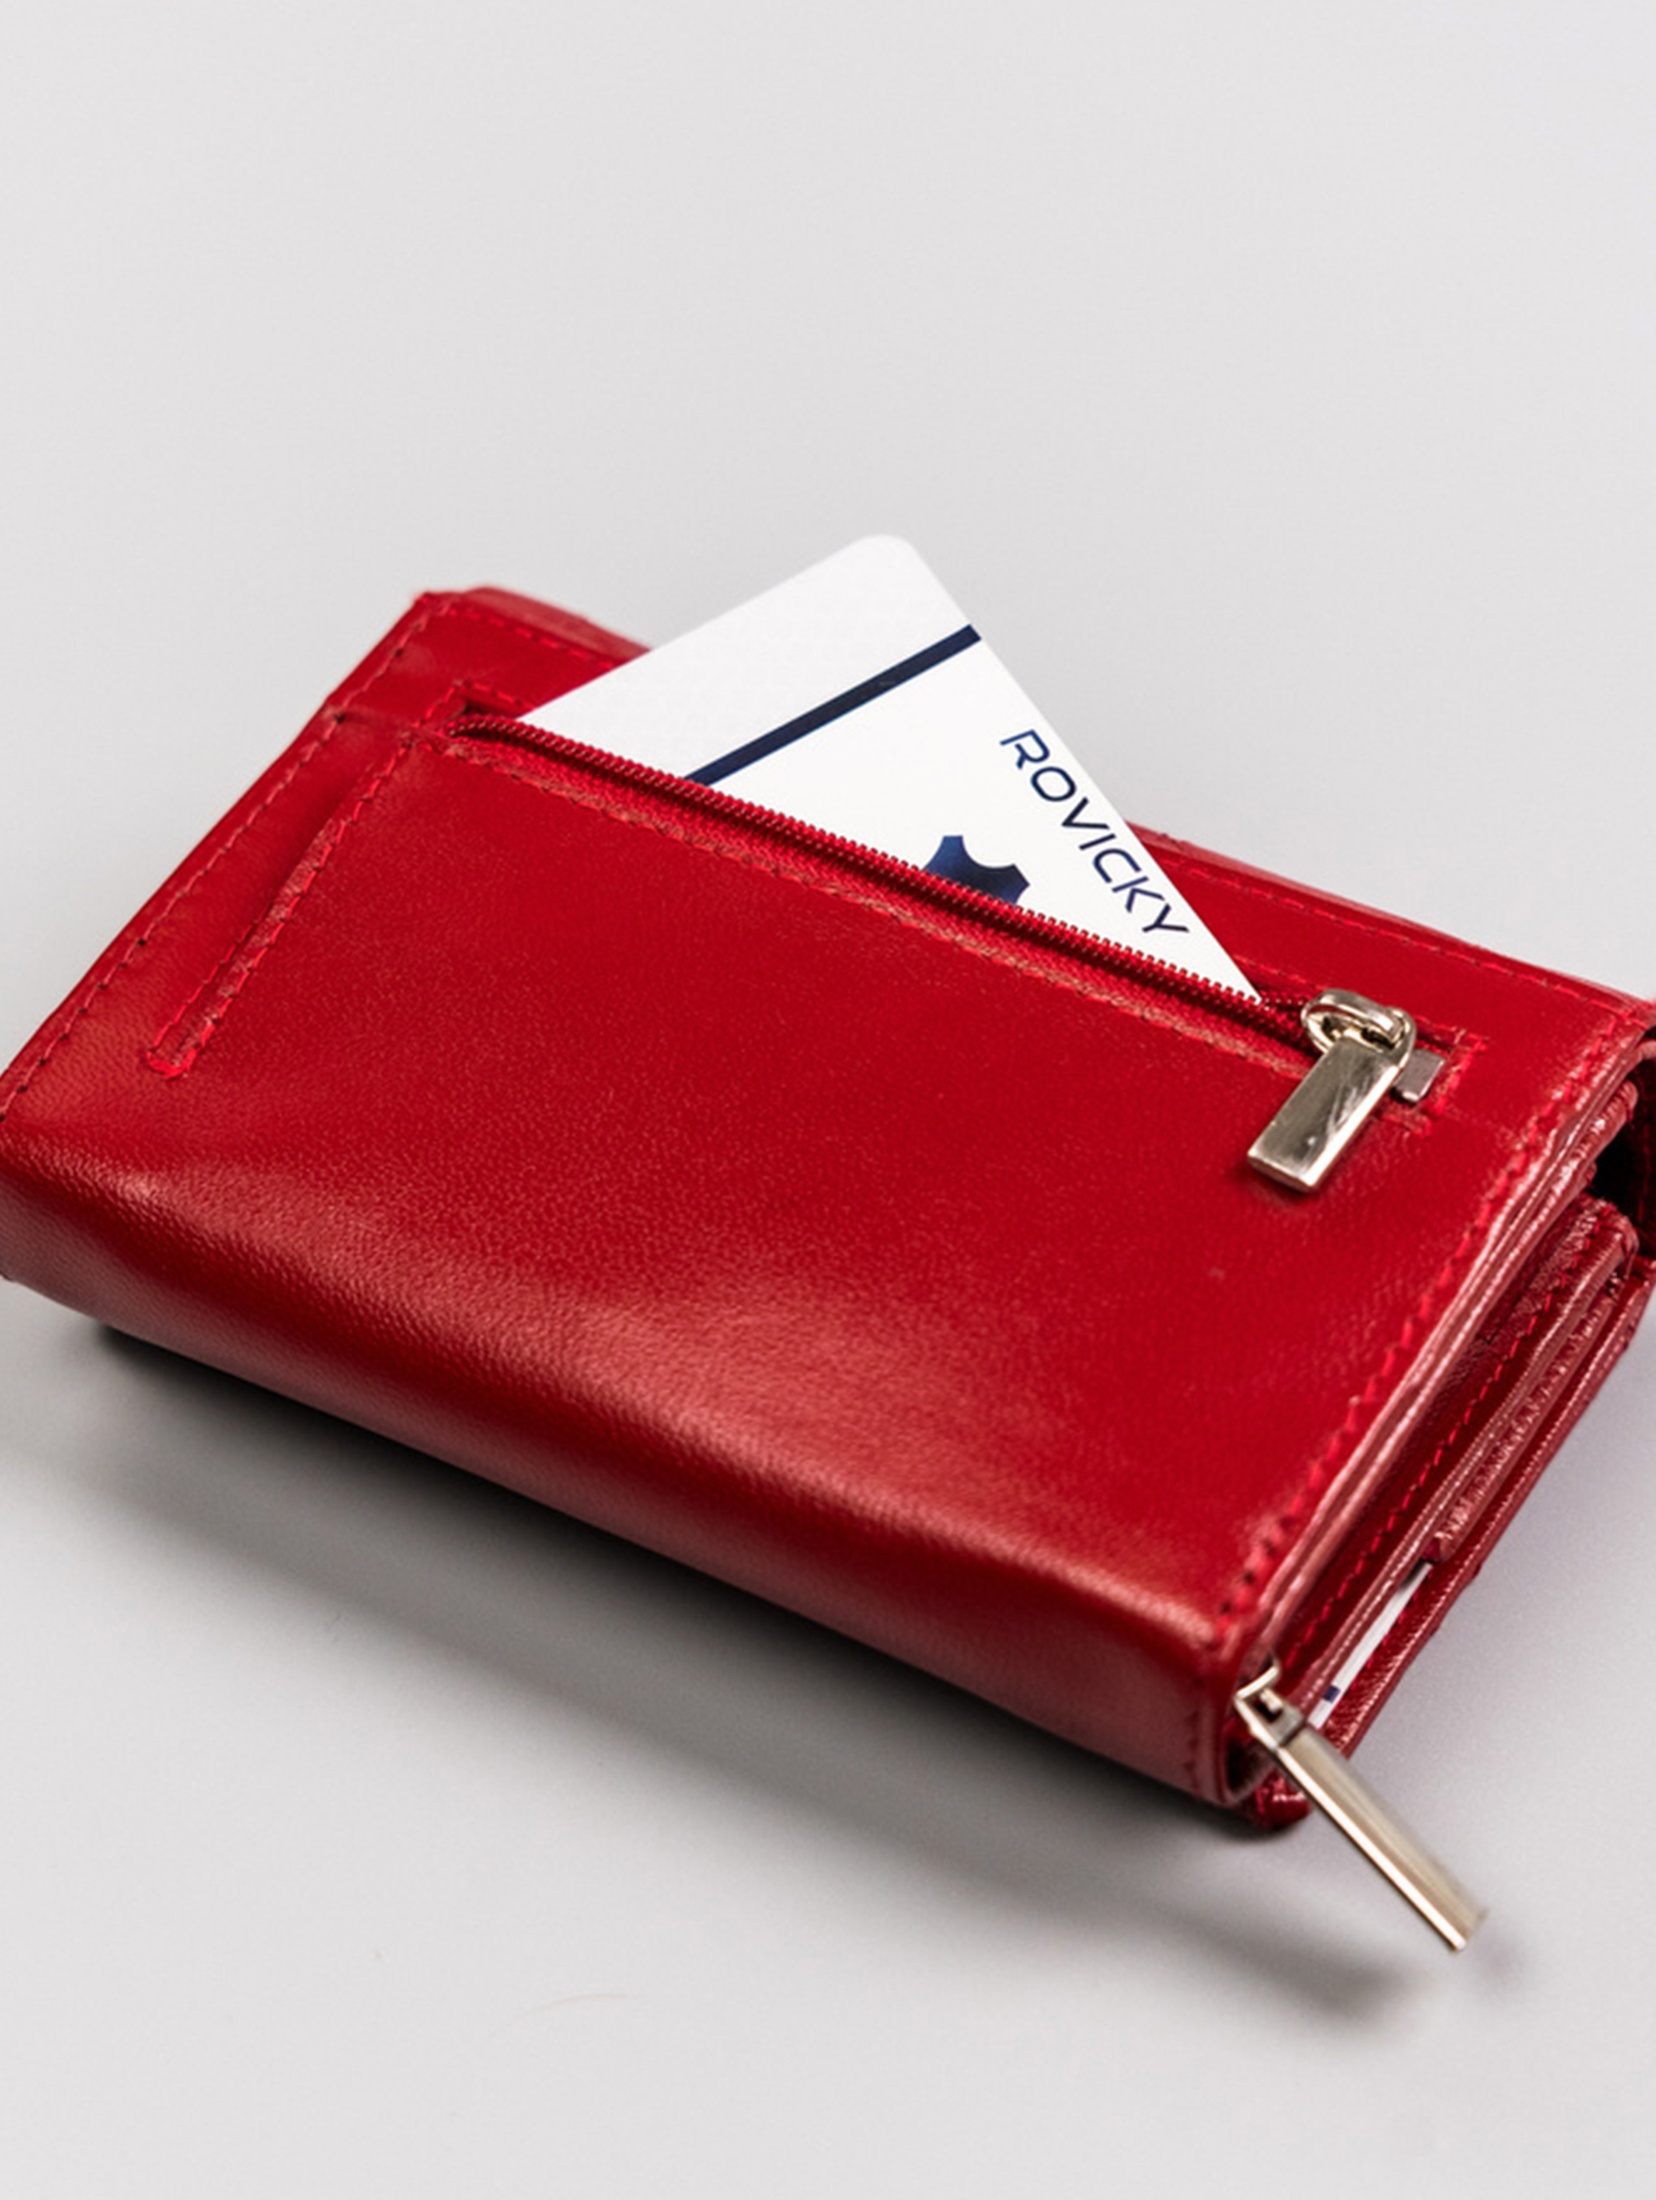 Rovicky skórzany portfel damski zamykany na zatrzask- czerwony